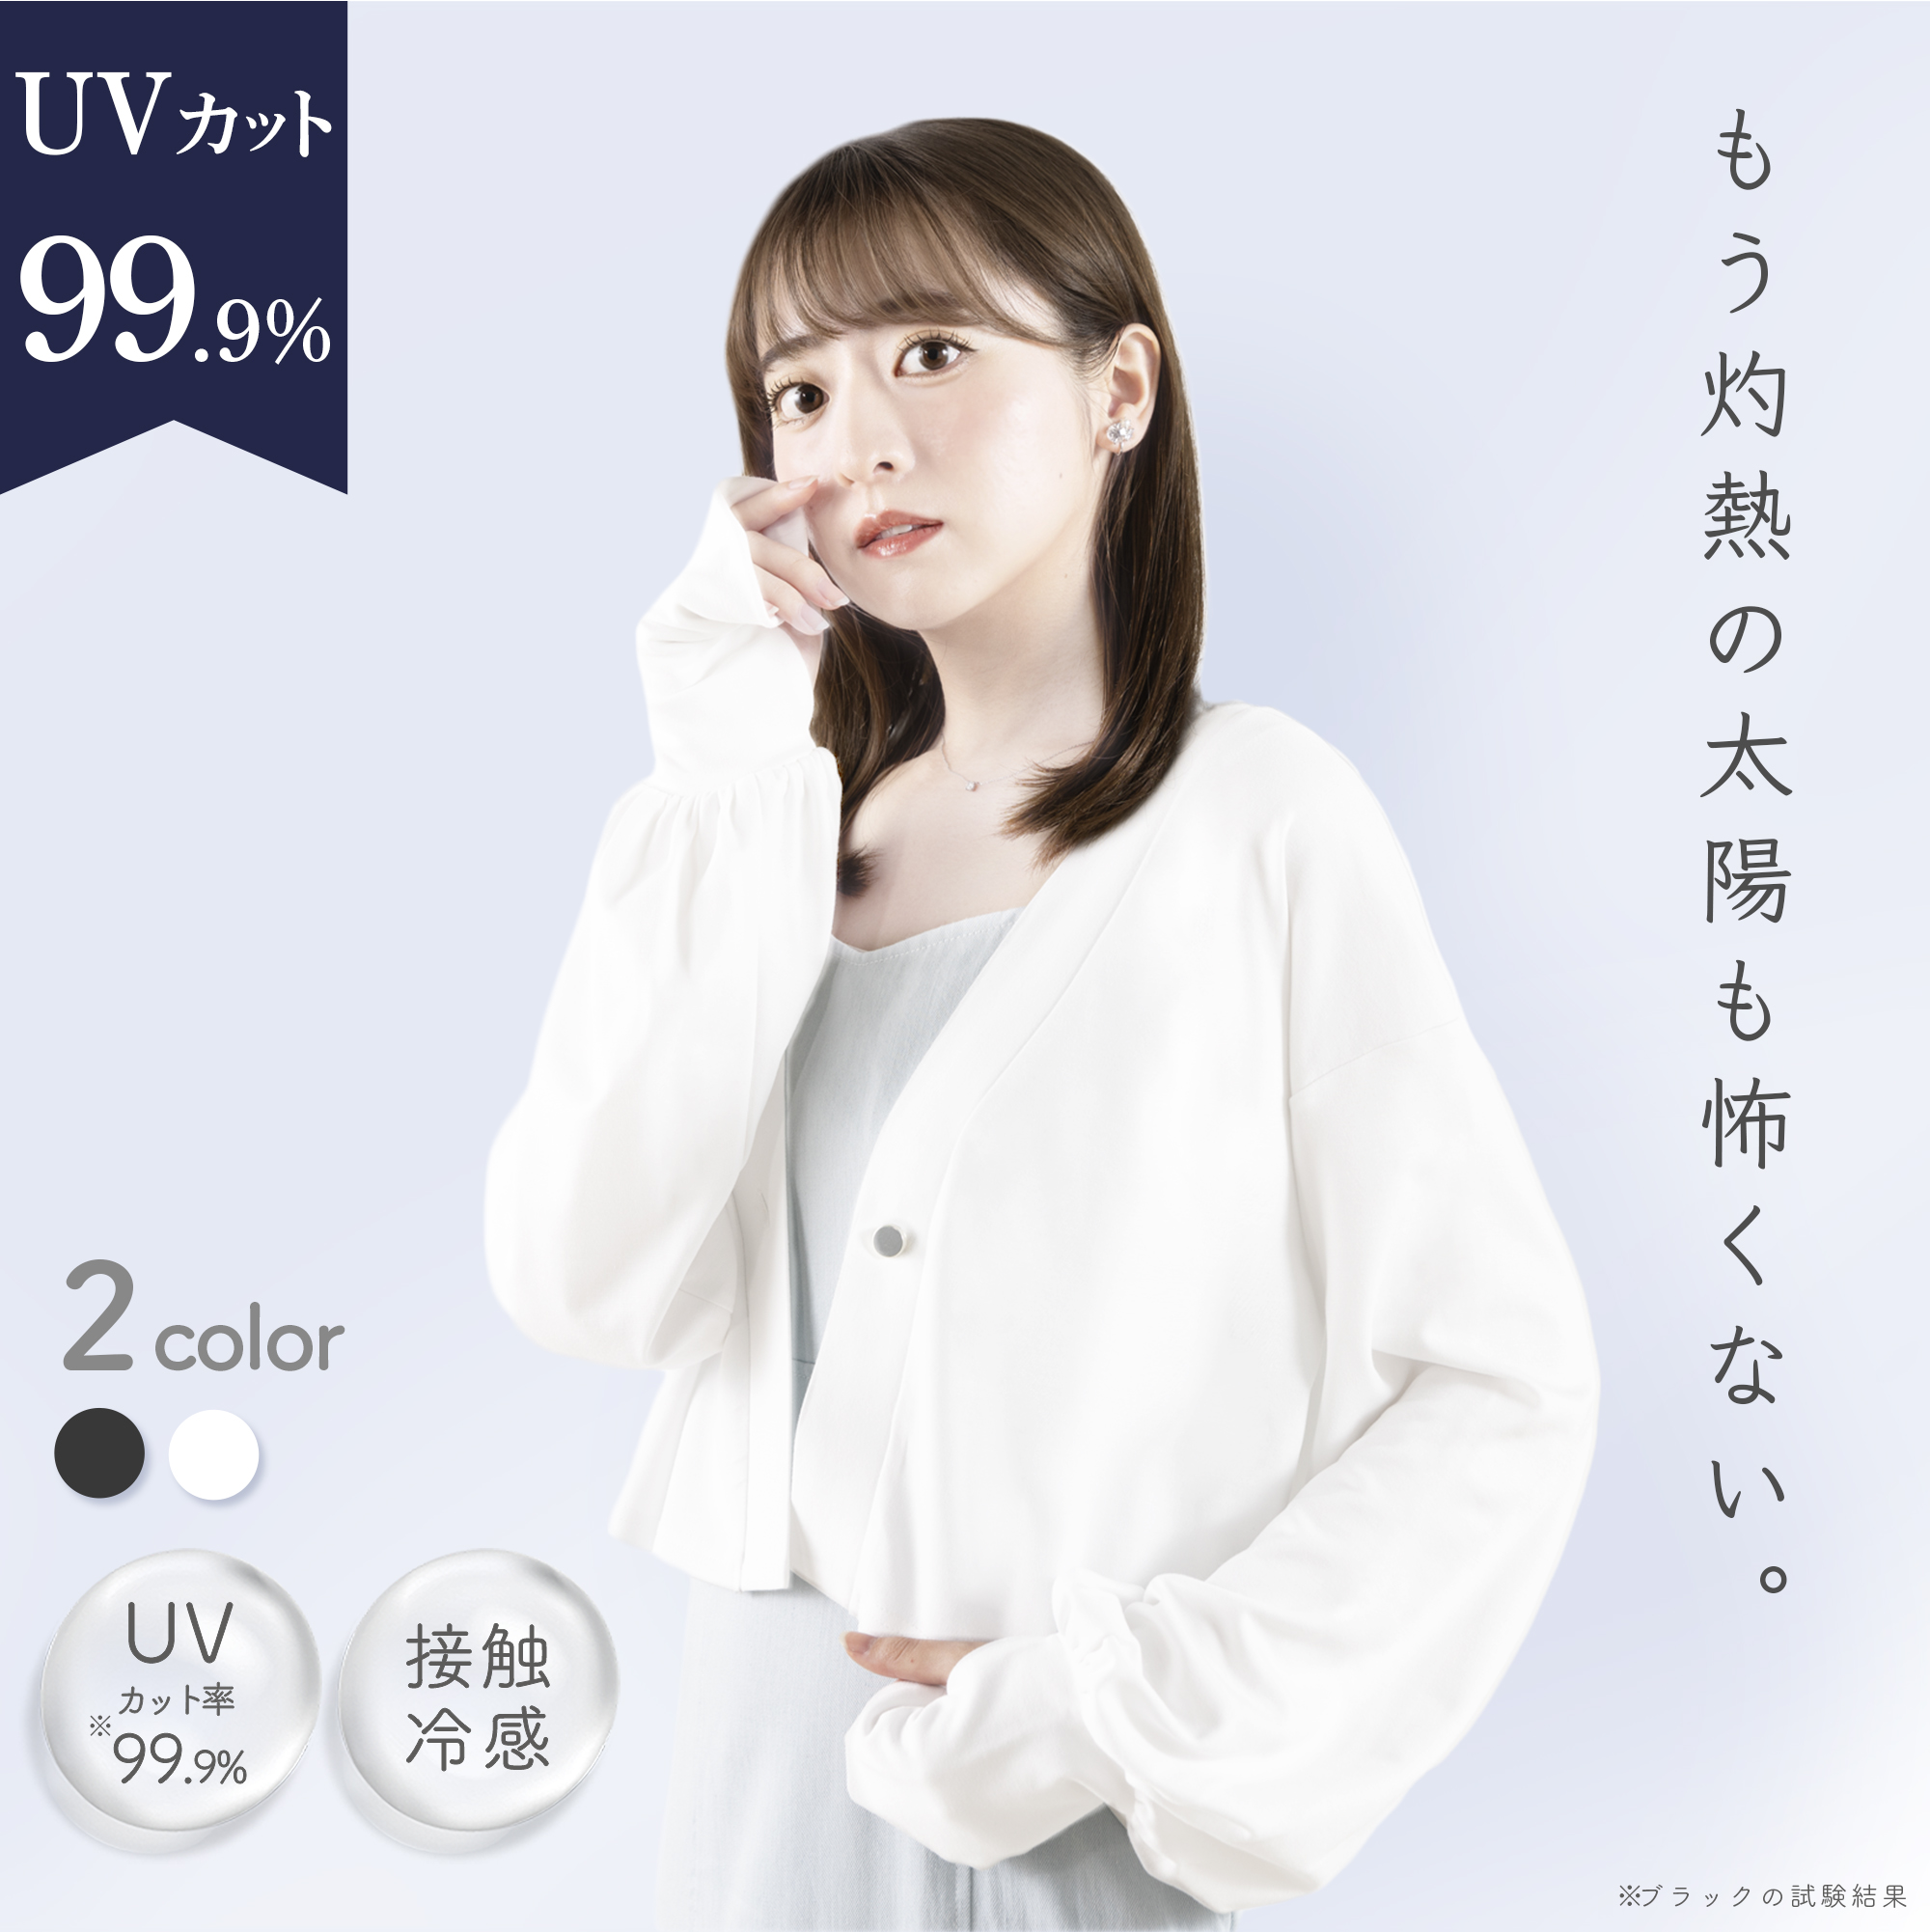 【楽天市場】15分で完売した 着る日焼け止め UVカット 99.9 